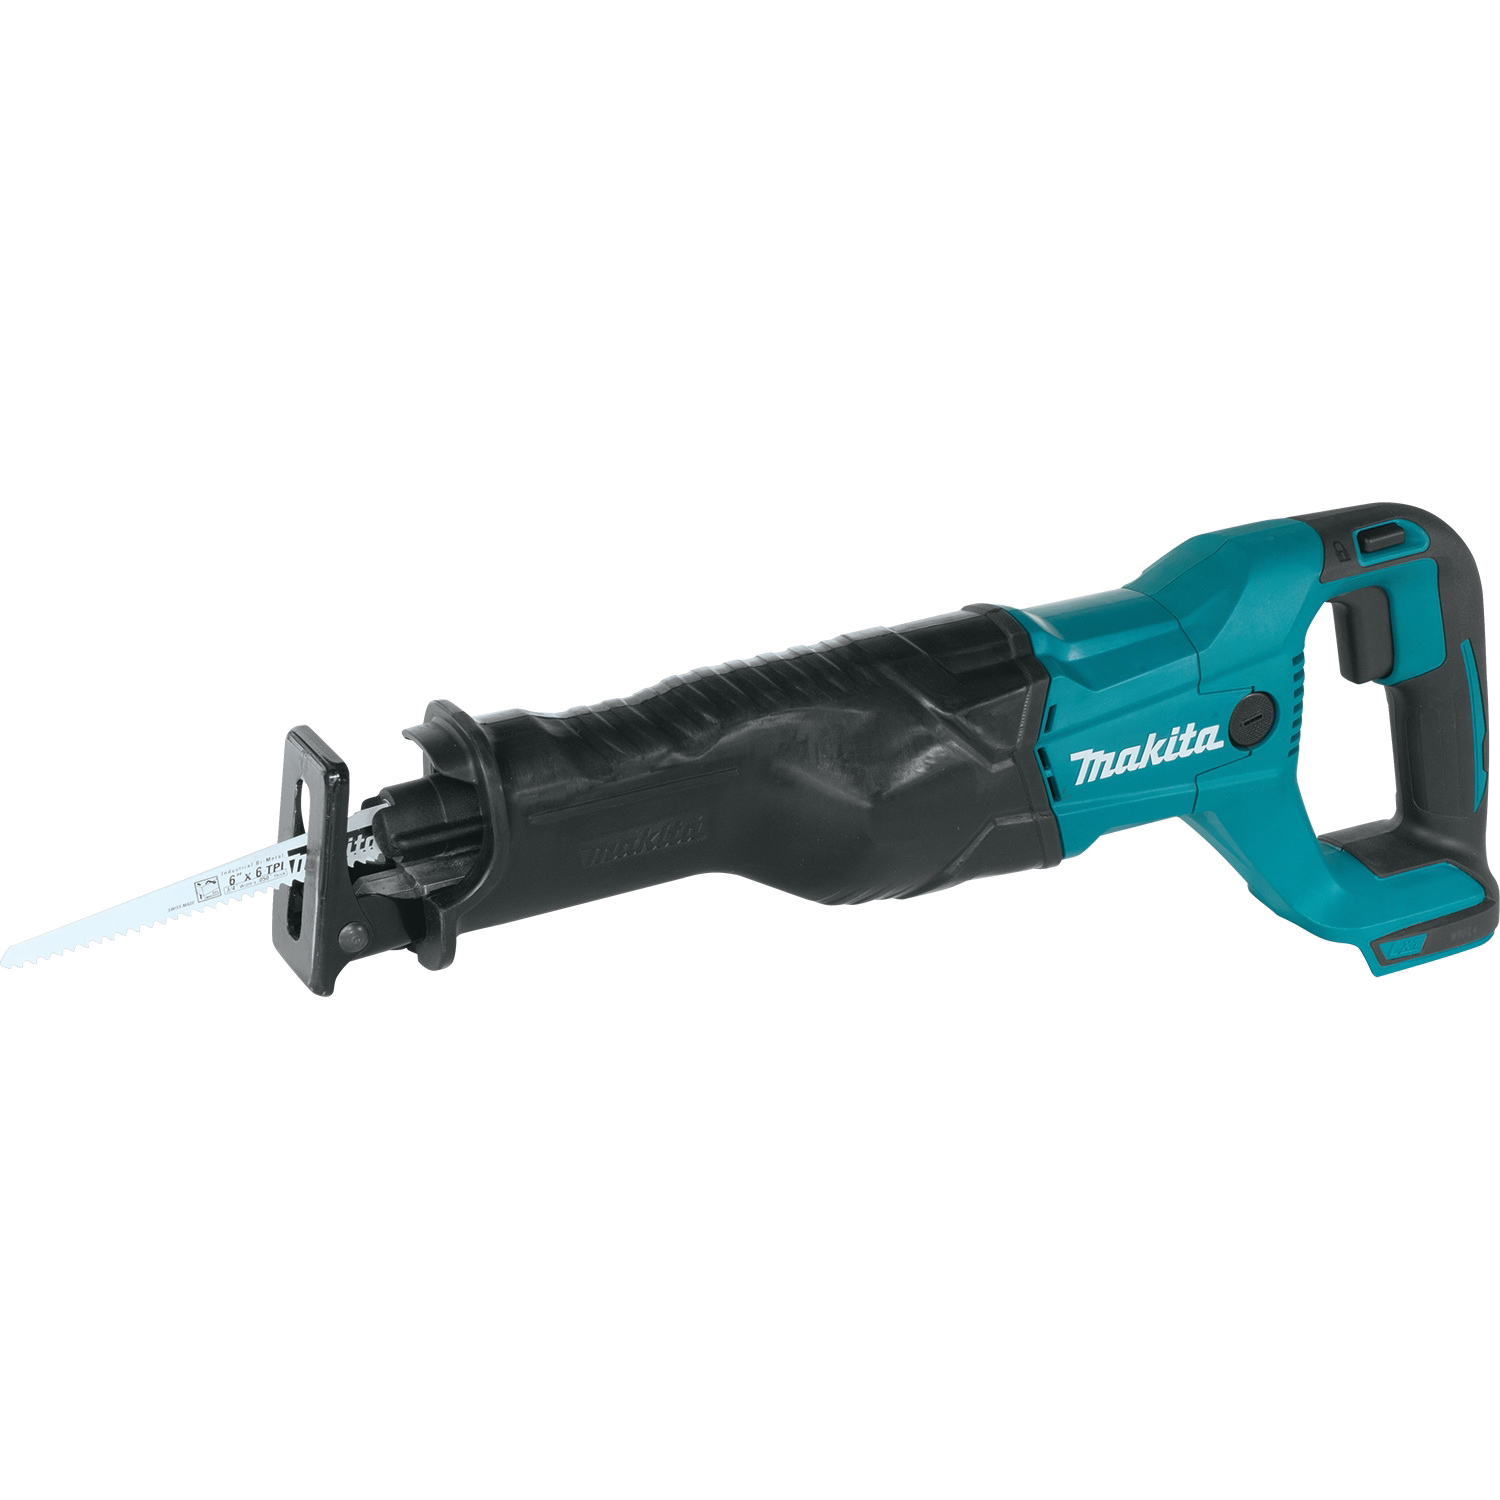 Makita XRJ04Z Reciprocating Saw, Tool Only, 18 V, 10 in Cutting Capacity, 1-1/4 in L Stroke, 0 to 2800 spm - 1